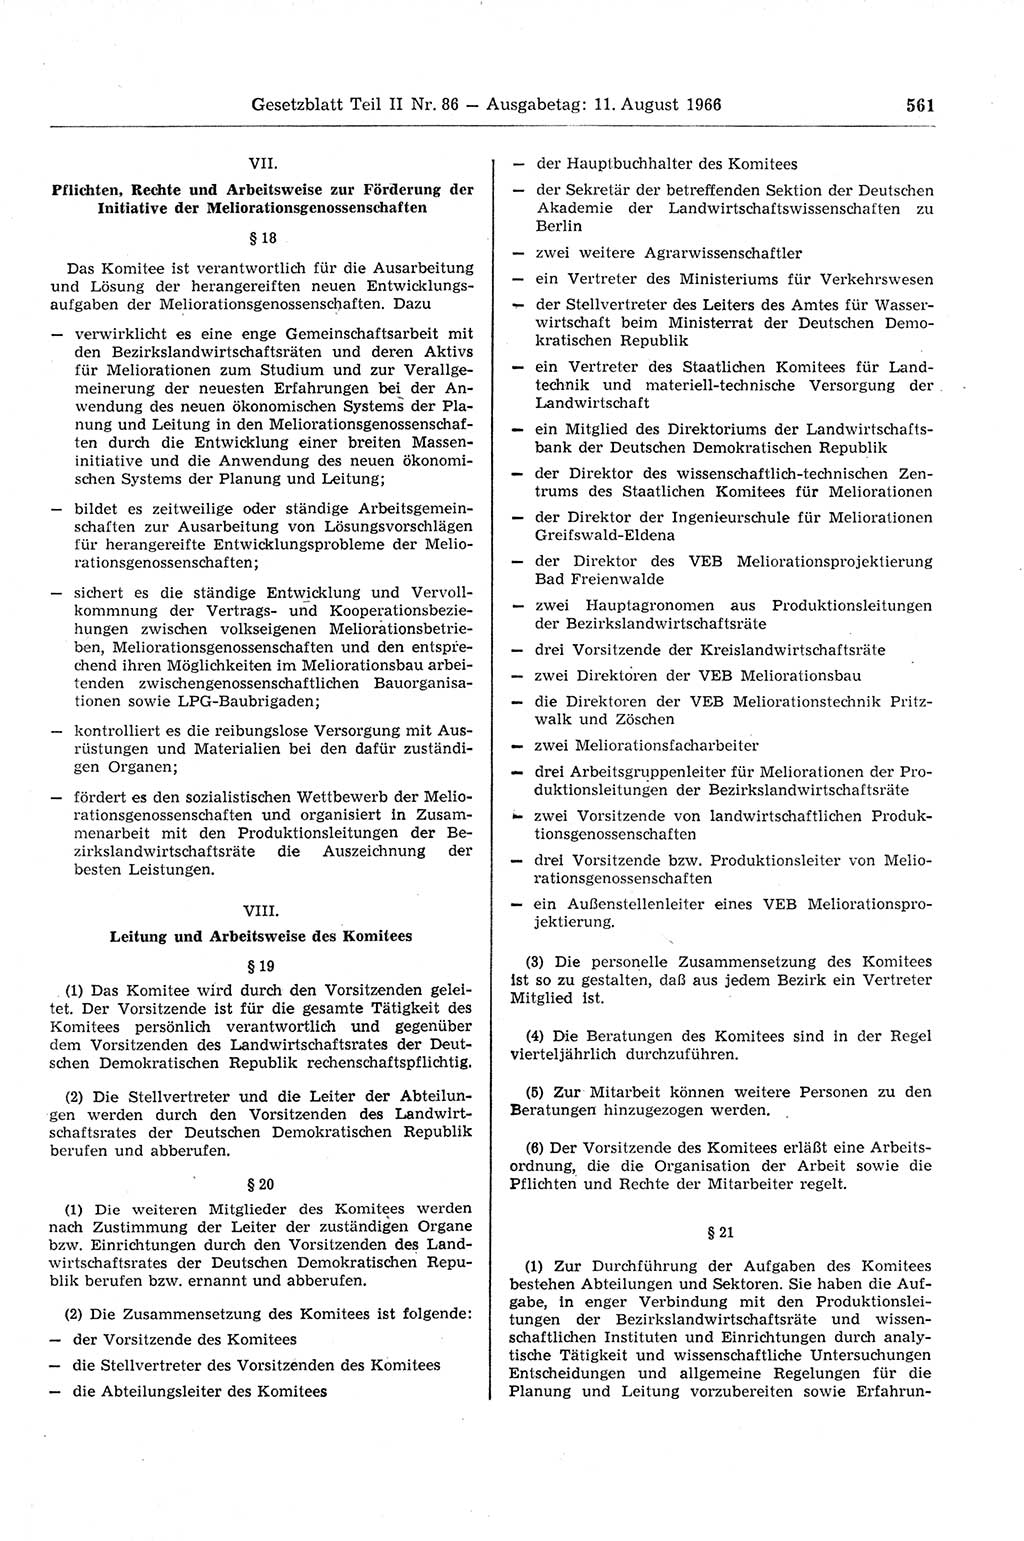 Gesetzblatt (GBl.) der Deutschen Demokratischen Republik (DDR) Teil ⅠⅠ 1966, Seite 561 (GBl. DDR ⅠⅠ 1966, S. 561)